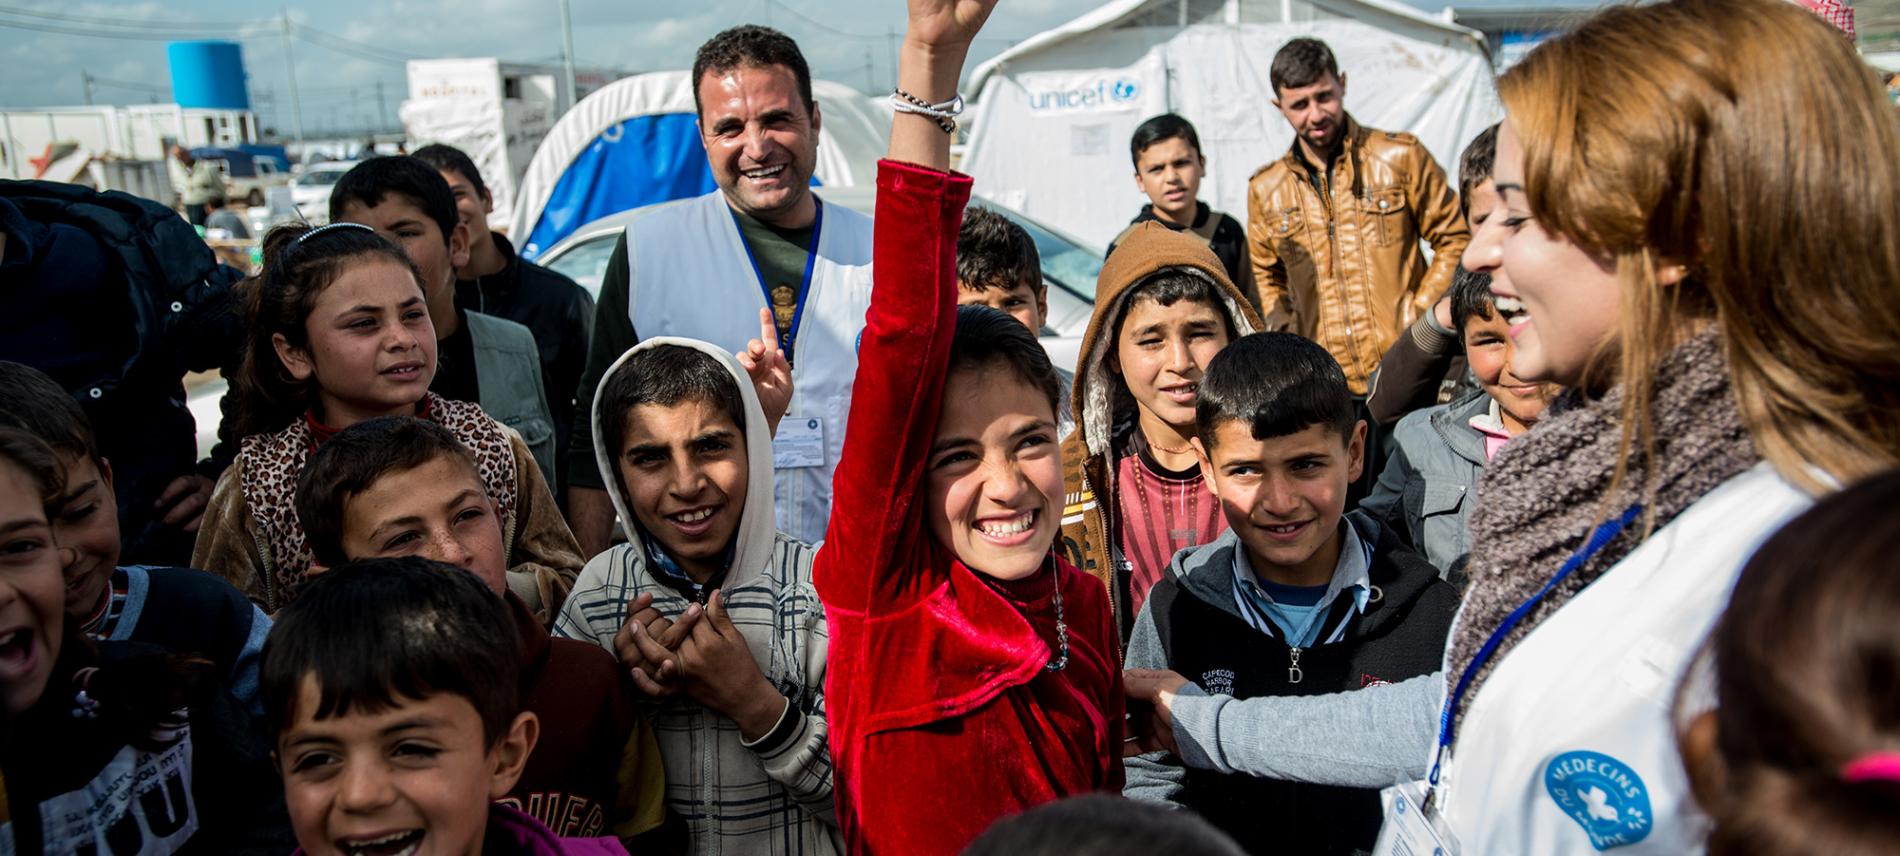 Kinder in einem irakischen Flüchtlingscamp. Foto: Guillaume Pinon